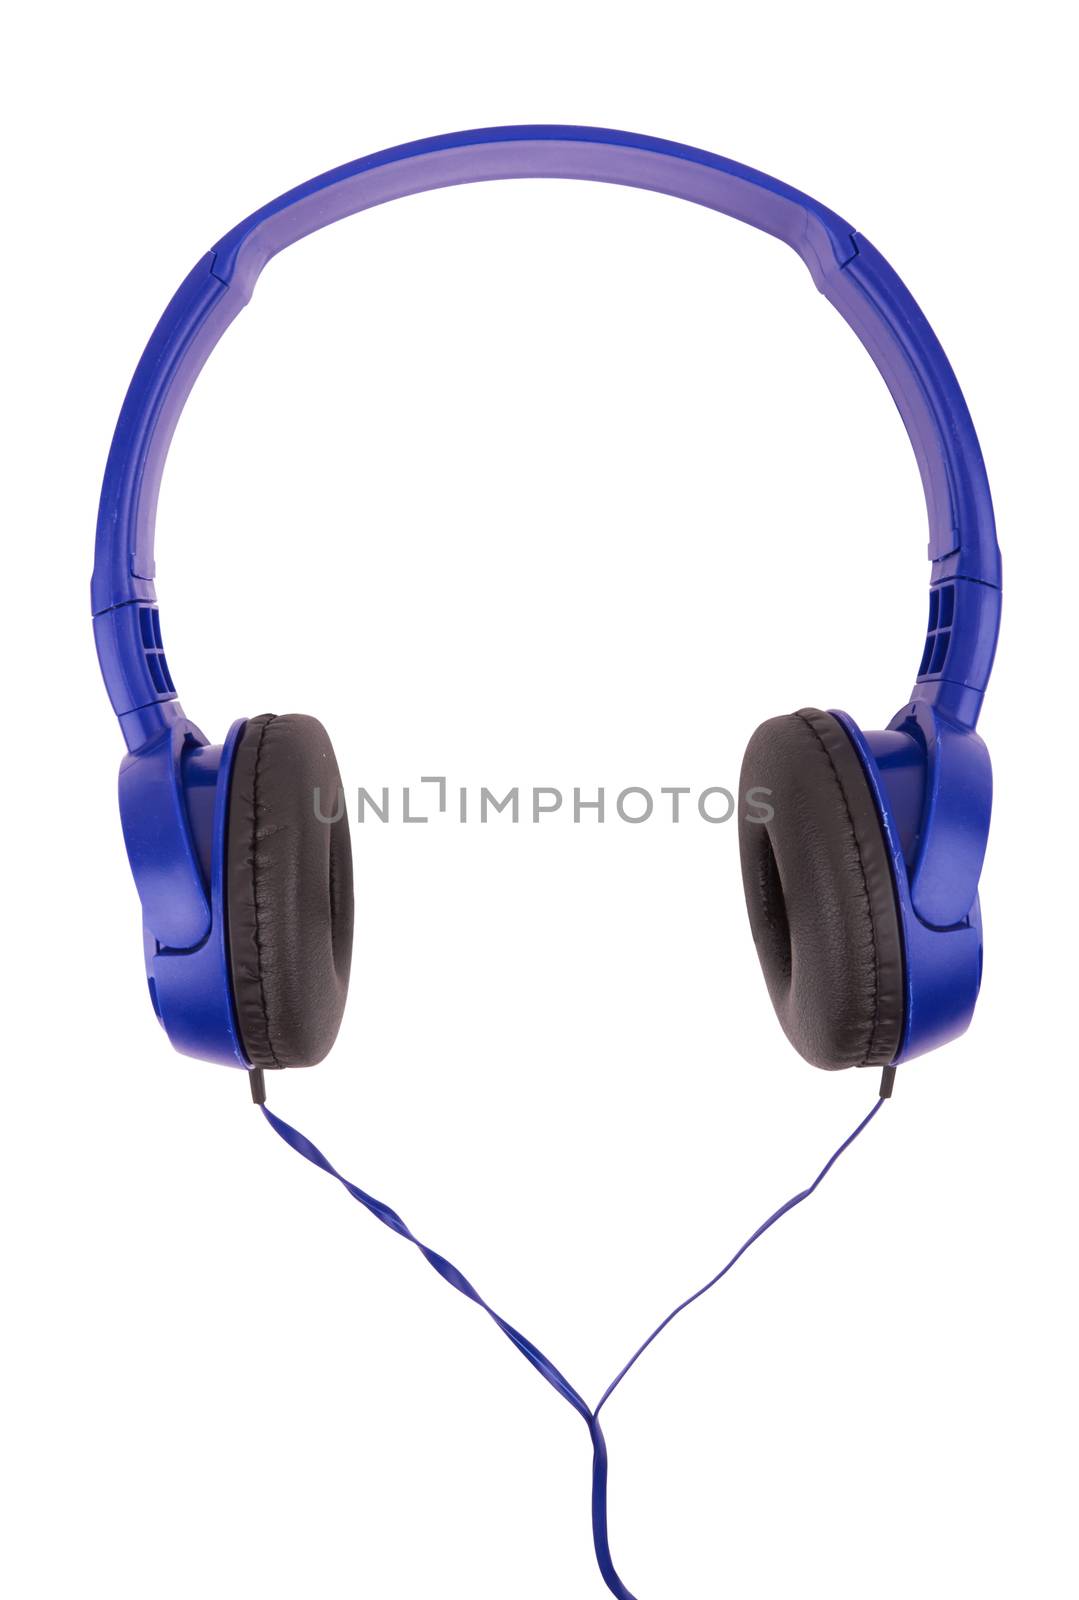 headphones on white by pioneer111